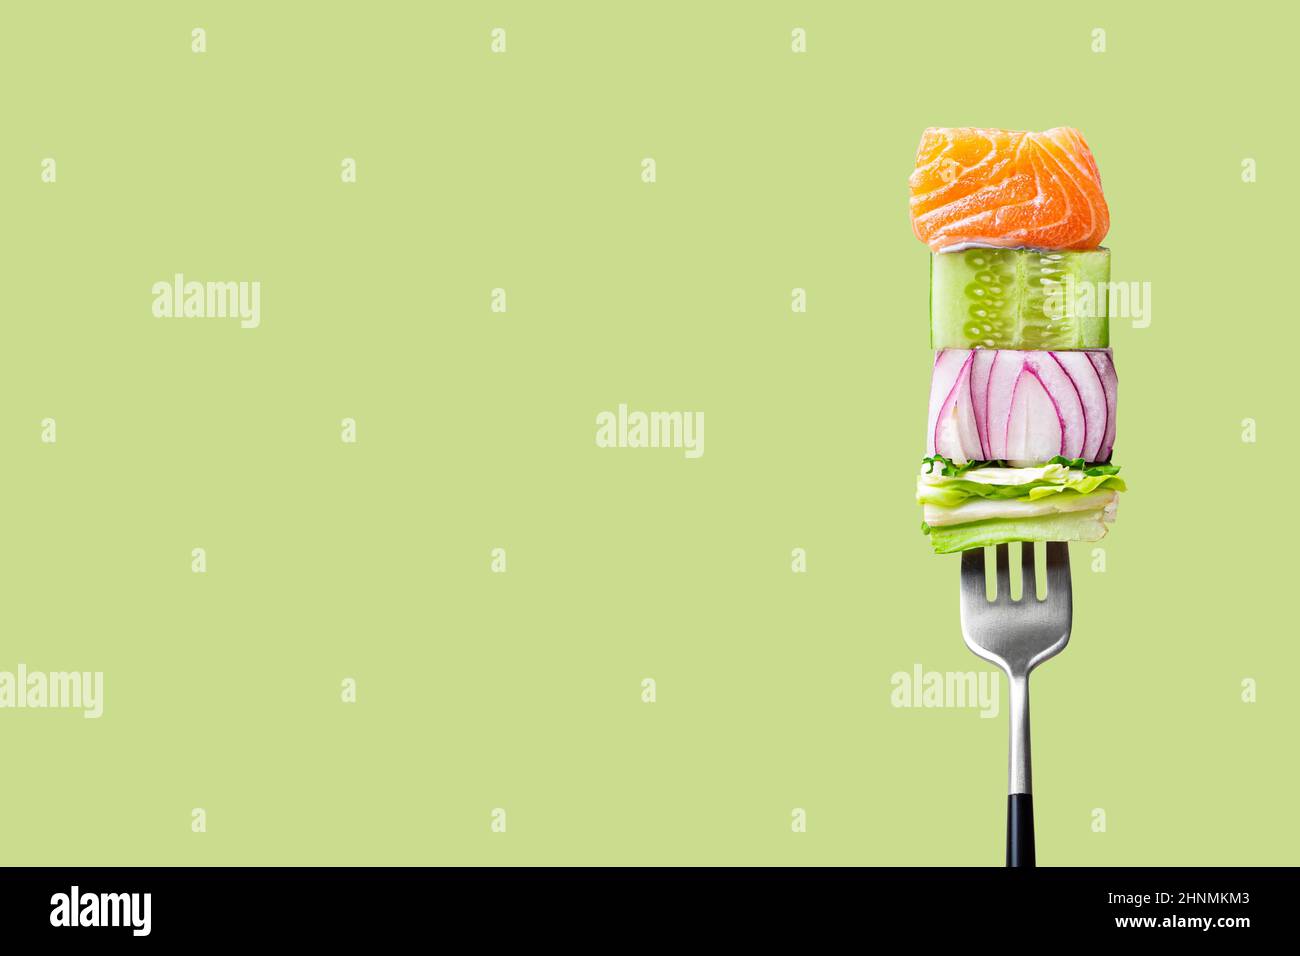 fourchette avec nourriture sur elle: délicieux filet de saumon, concombre, oignon, salade sur fond vert Banque D'Images